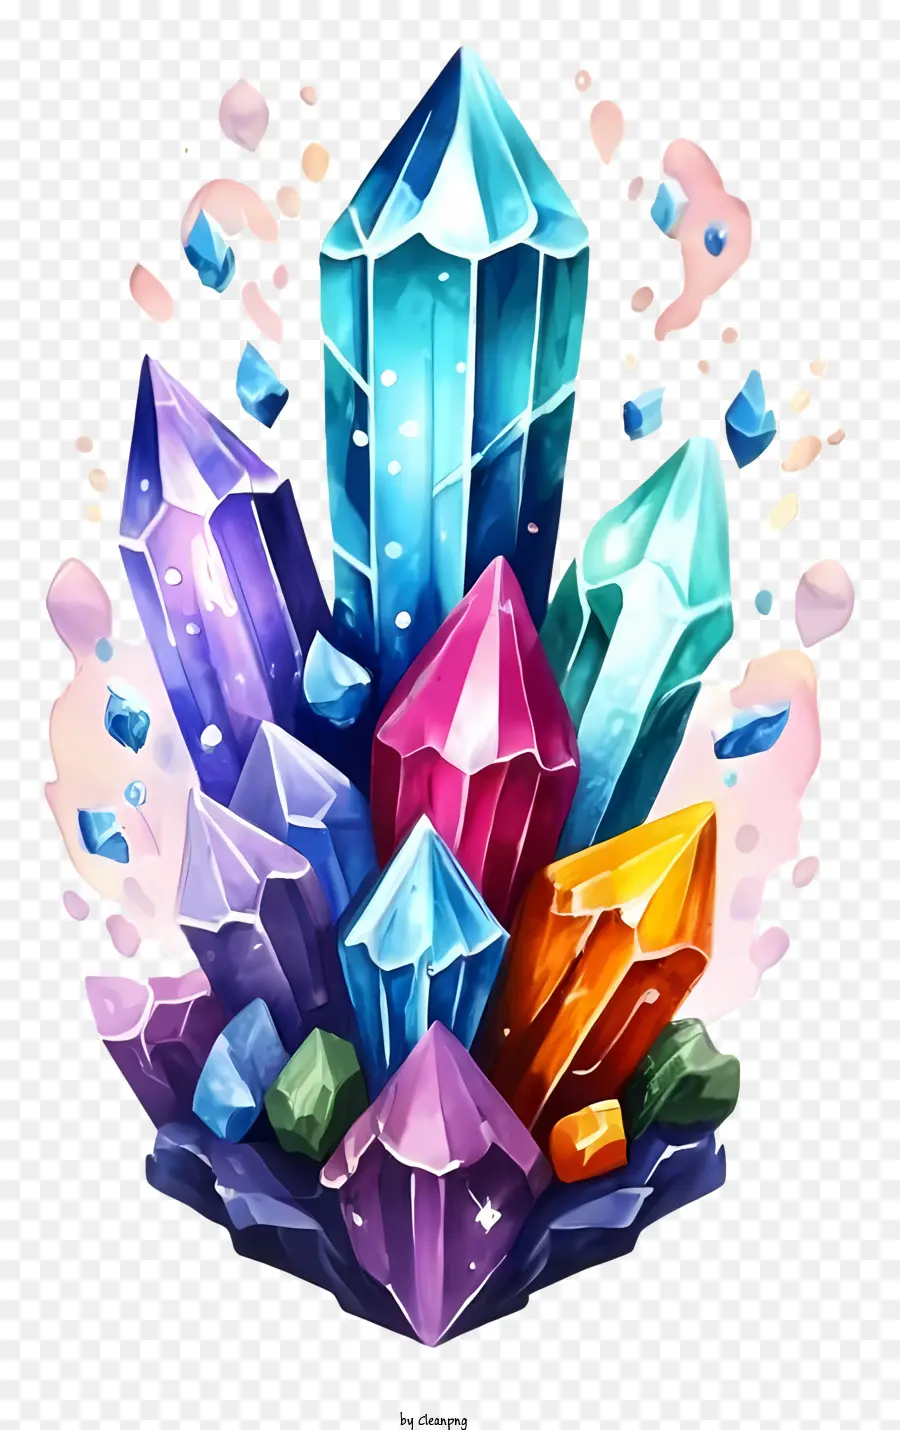 Kristalle farbenfrohe Formengrößen Stapel - Bunte Kristalle in verschiedenen Formen und Größenstapeln